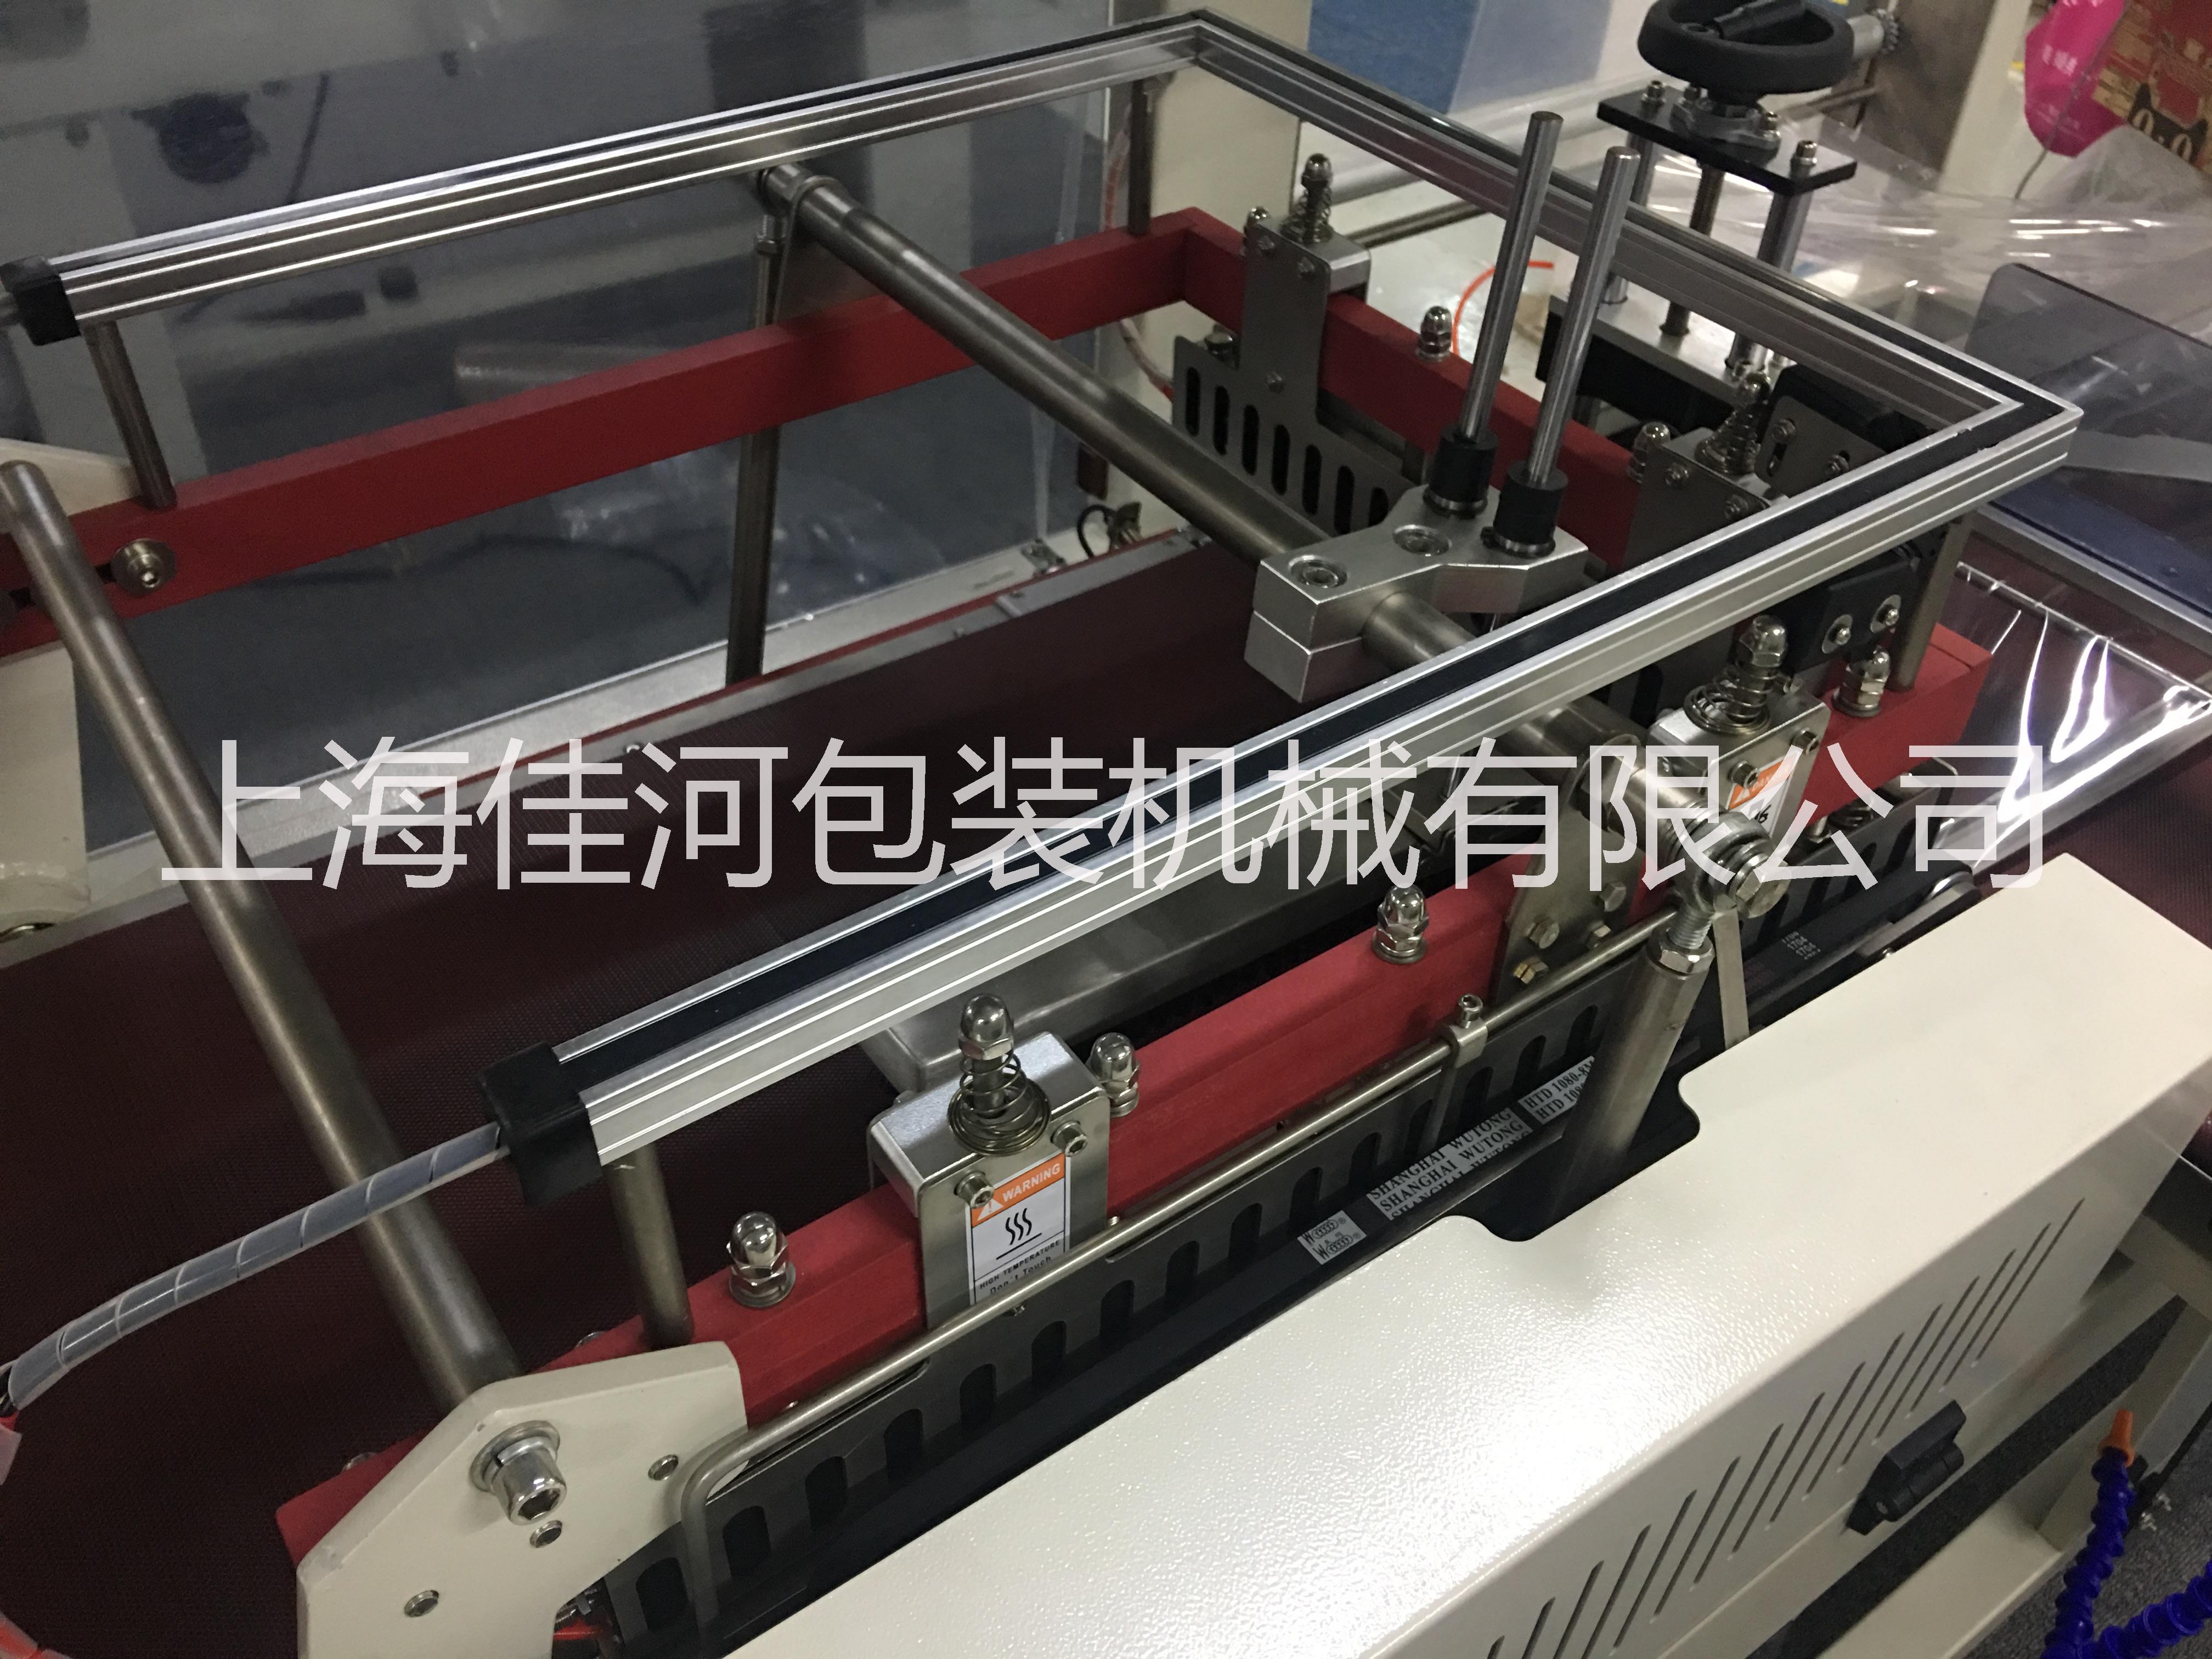 上海市上海佳河厂全自动封切热收缩包装机厂家上海佳河厂全自动封切热收缩包装机